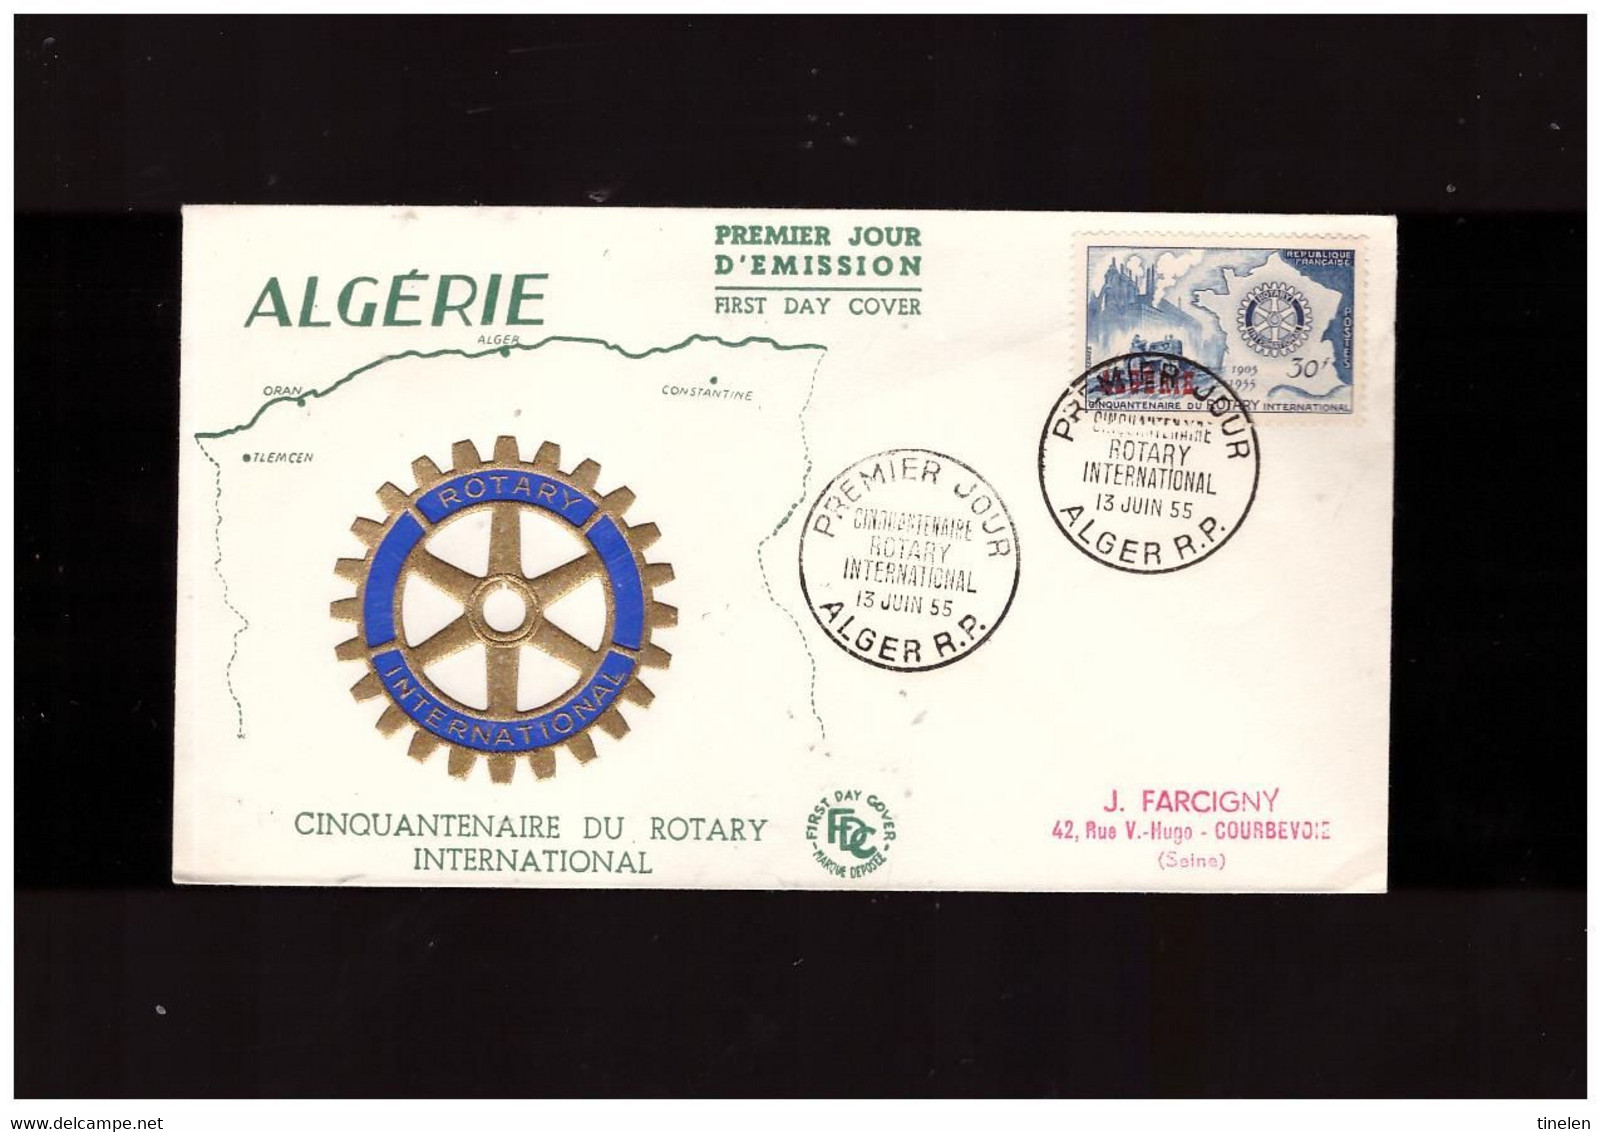 Algeria 13 6 1955 Fdc Rotary - FDC